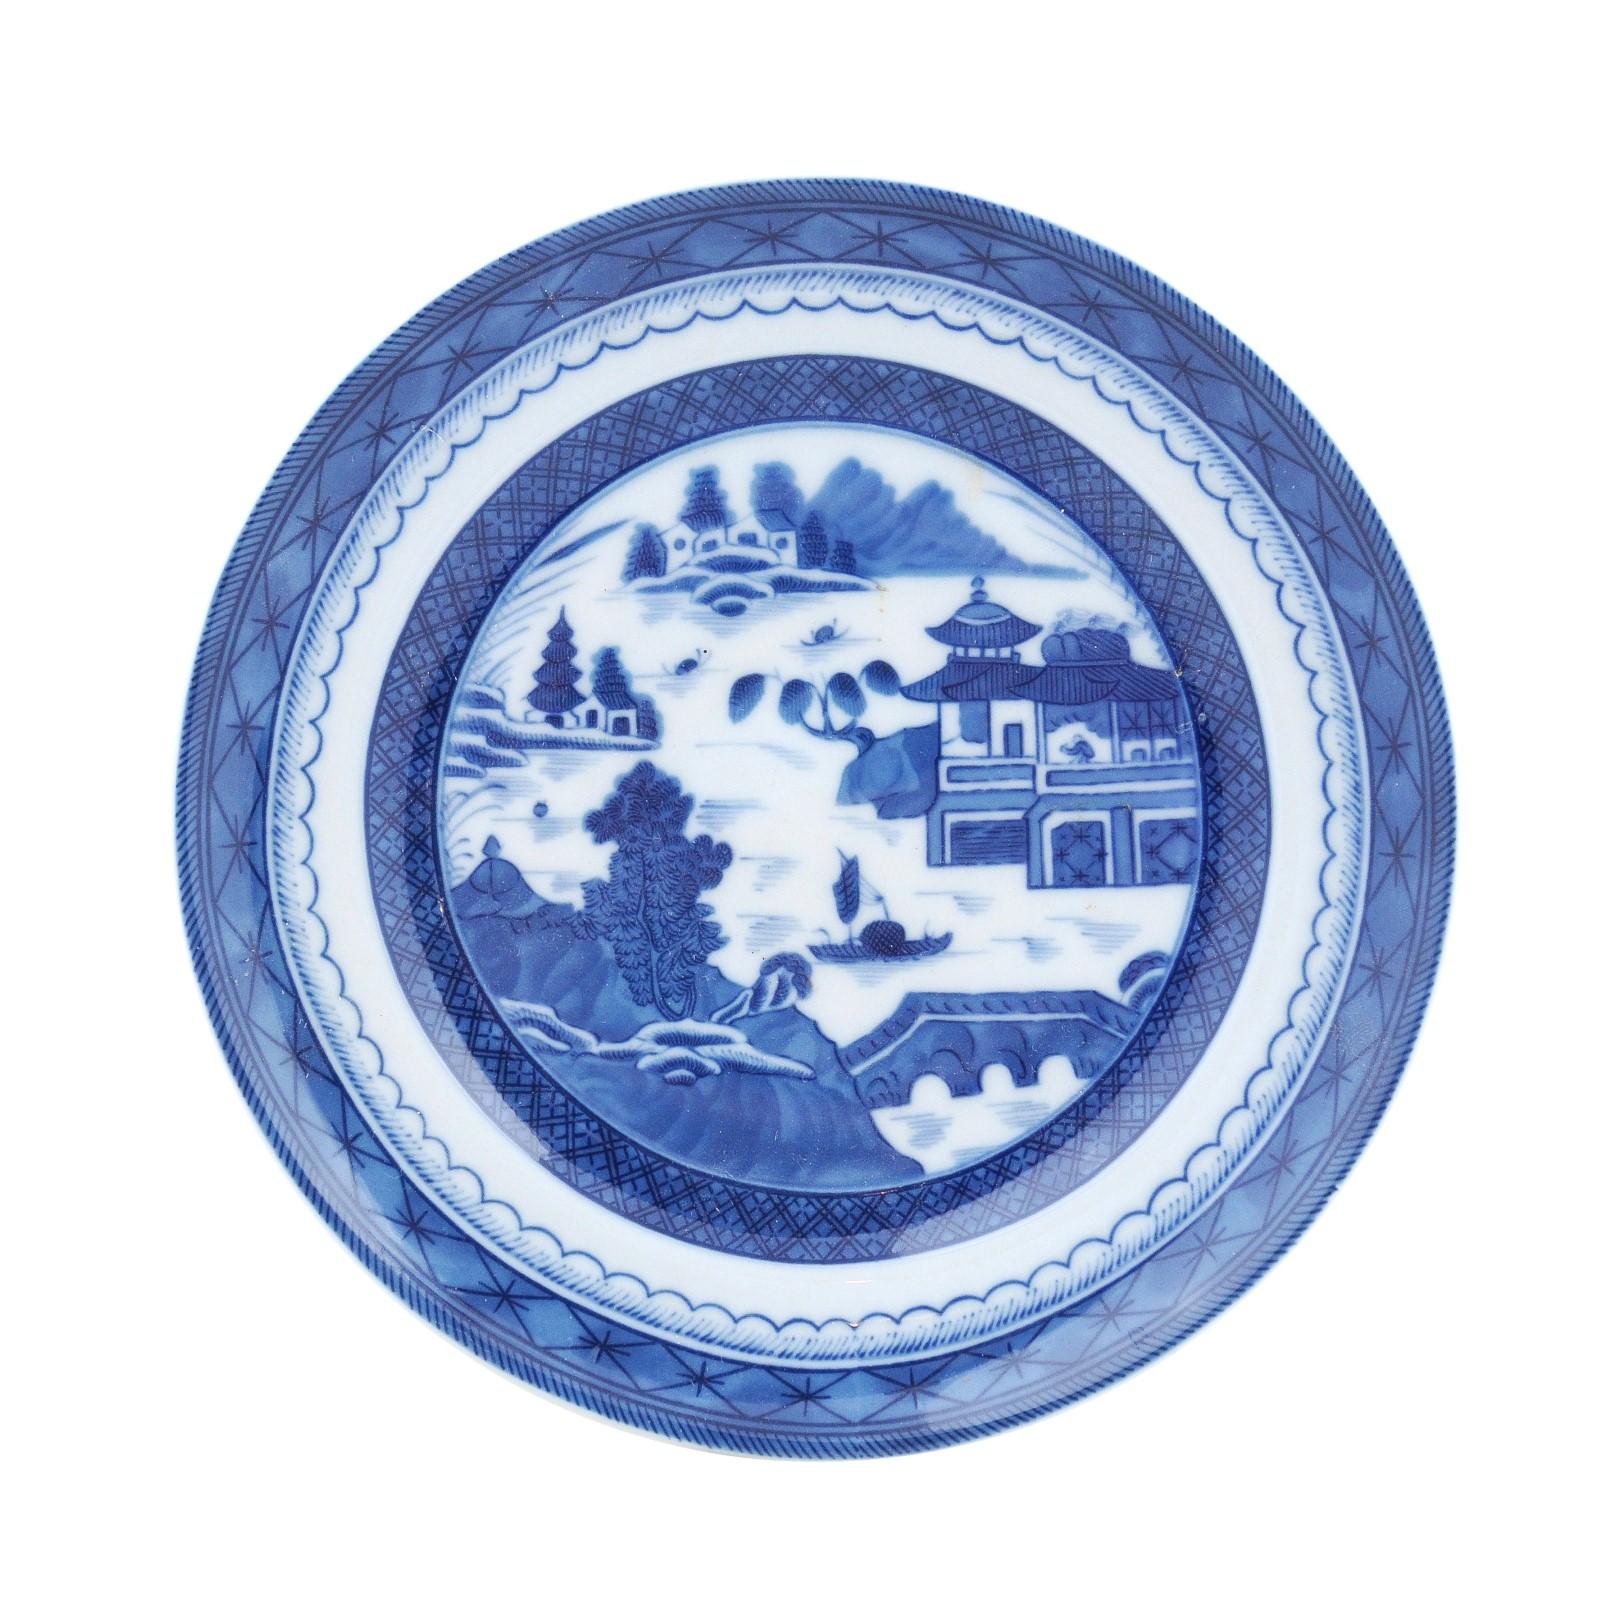 Blauer Kanton-Porzellanteller von Mottahedeh mit blauer und weißer chinesischer Landschaft